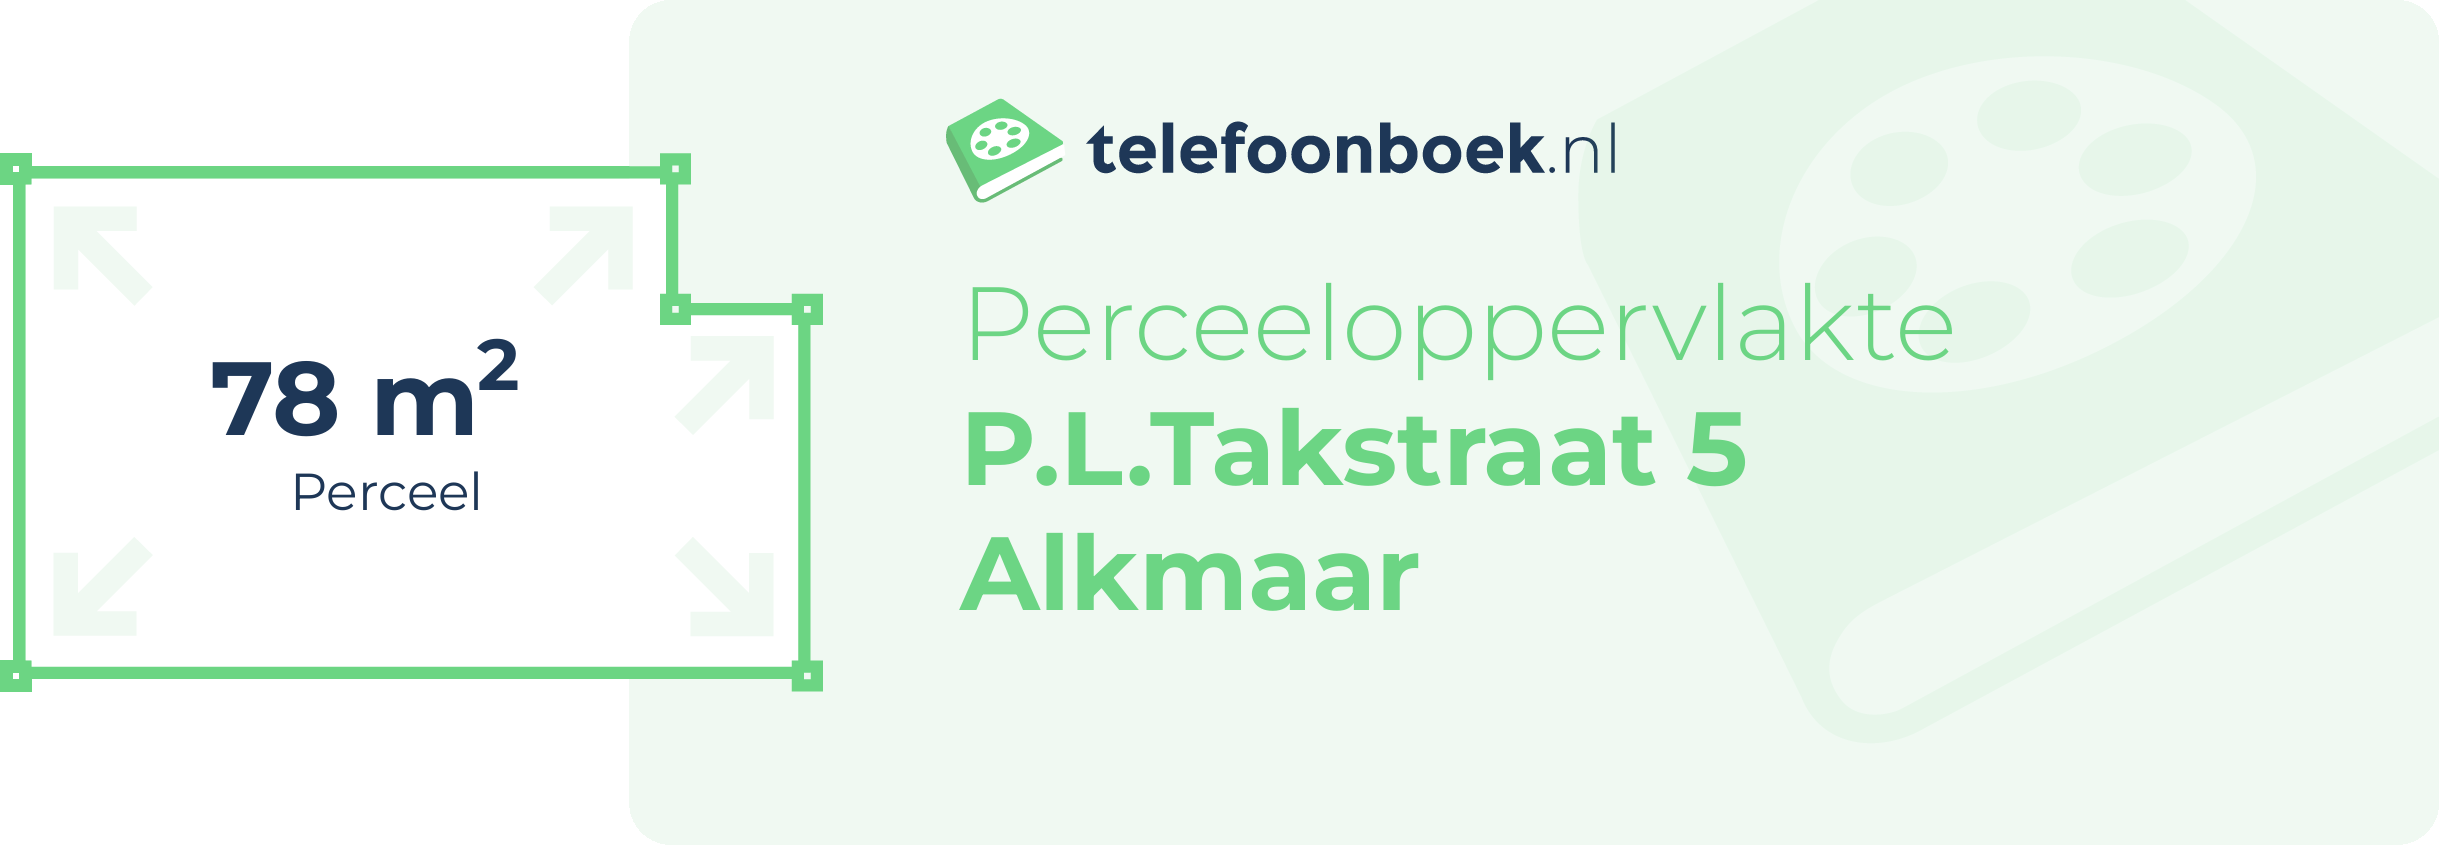 Perceeloppervlakte P.L.Takstraat 5 Alkmaar